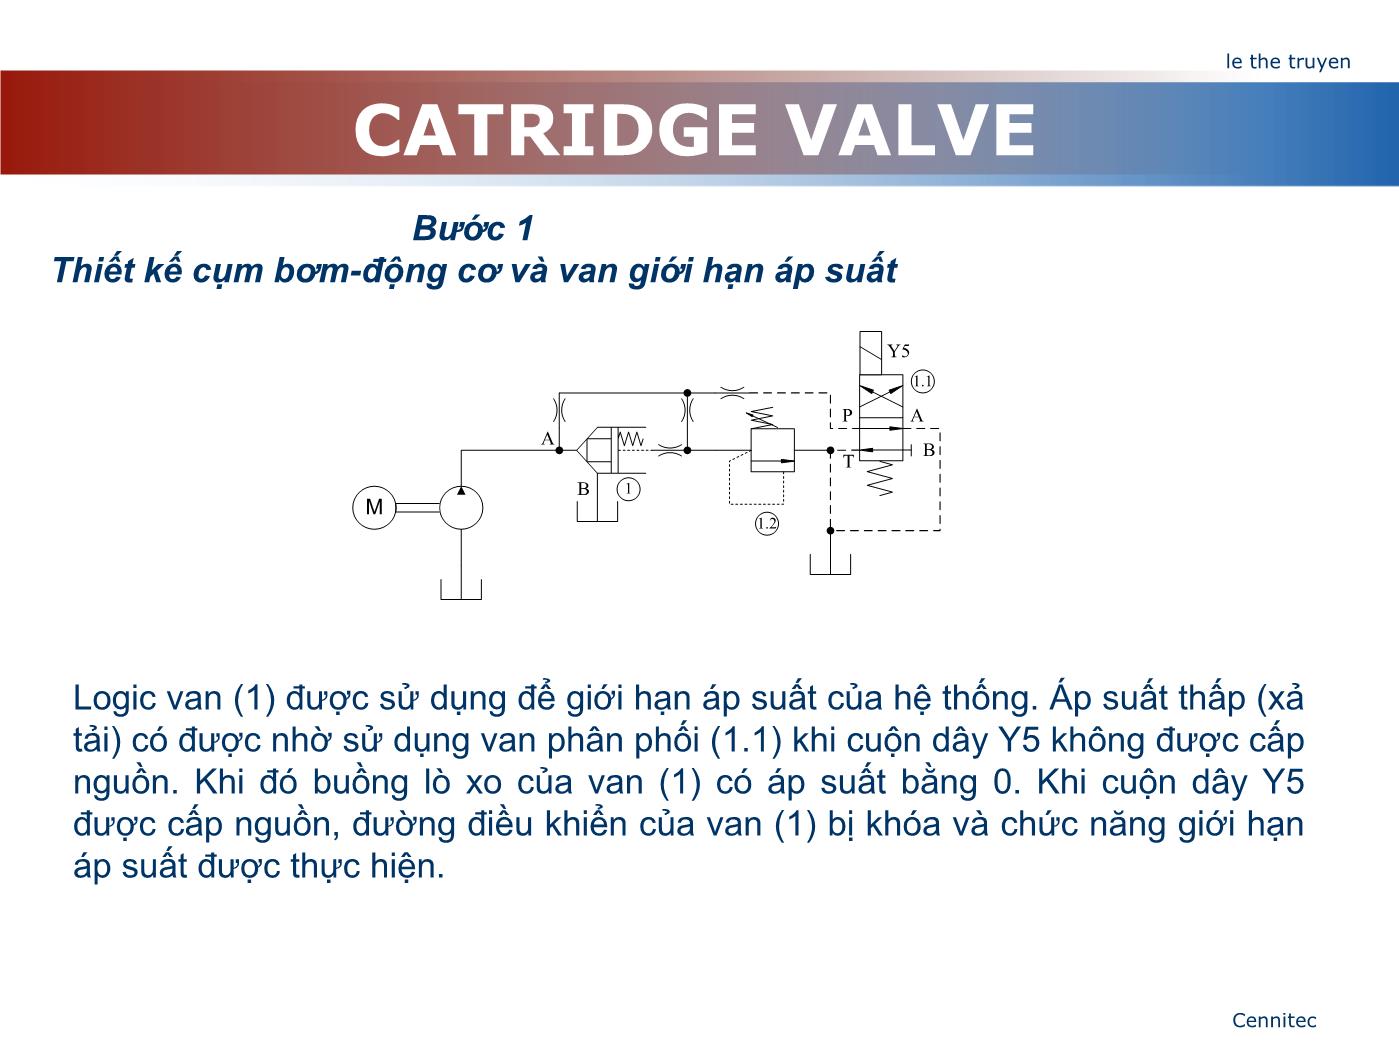 Bài giảng Truyển động thủy lực và khí - Chương 8: Catridge Valve - Lê Thế Truyền trang 9